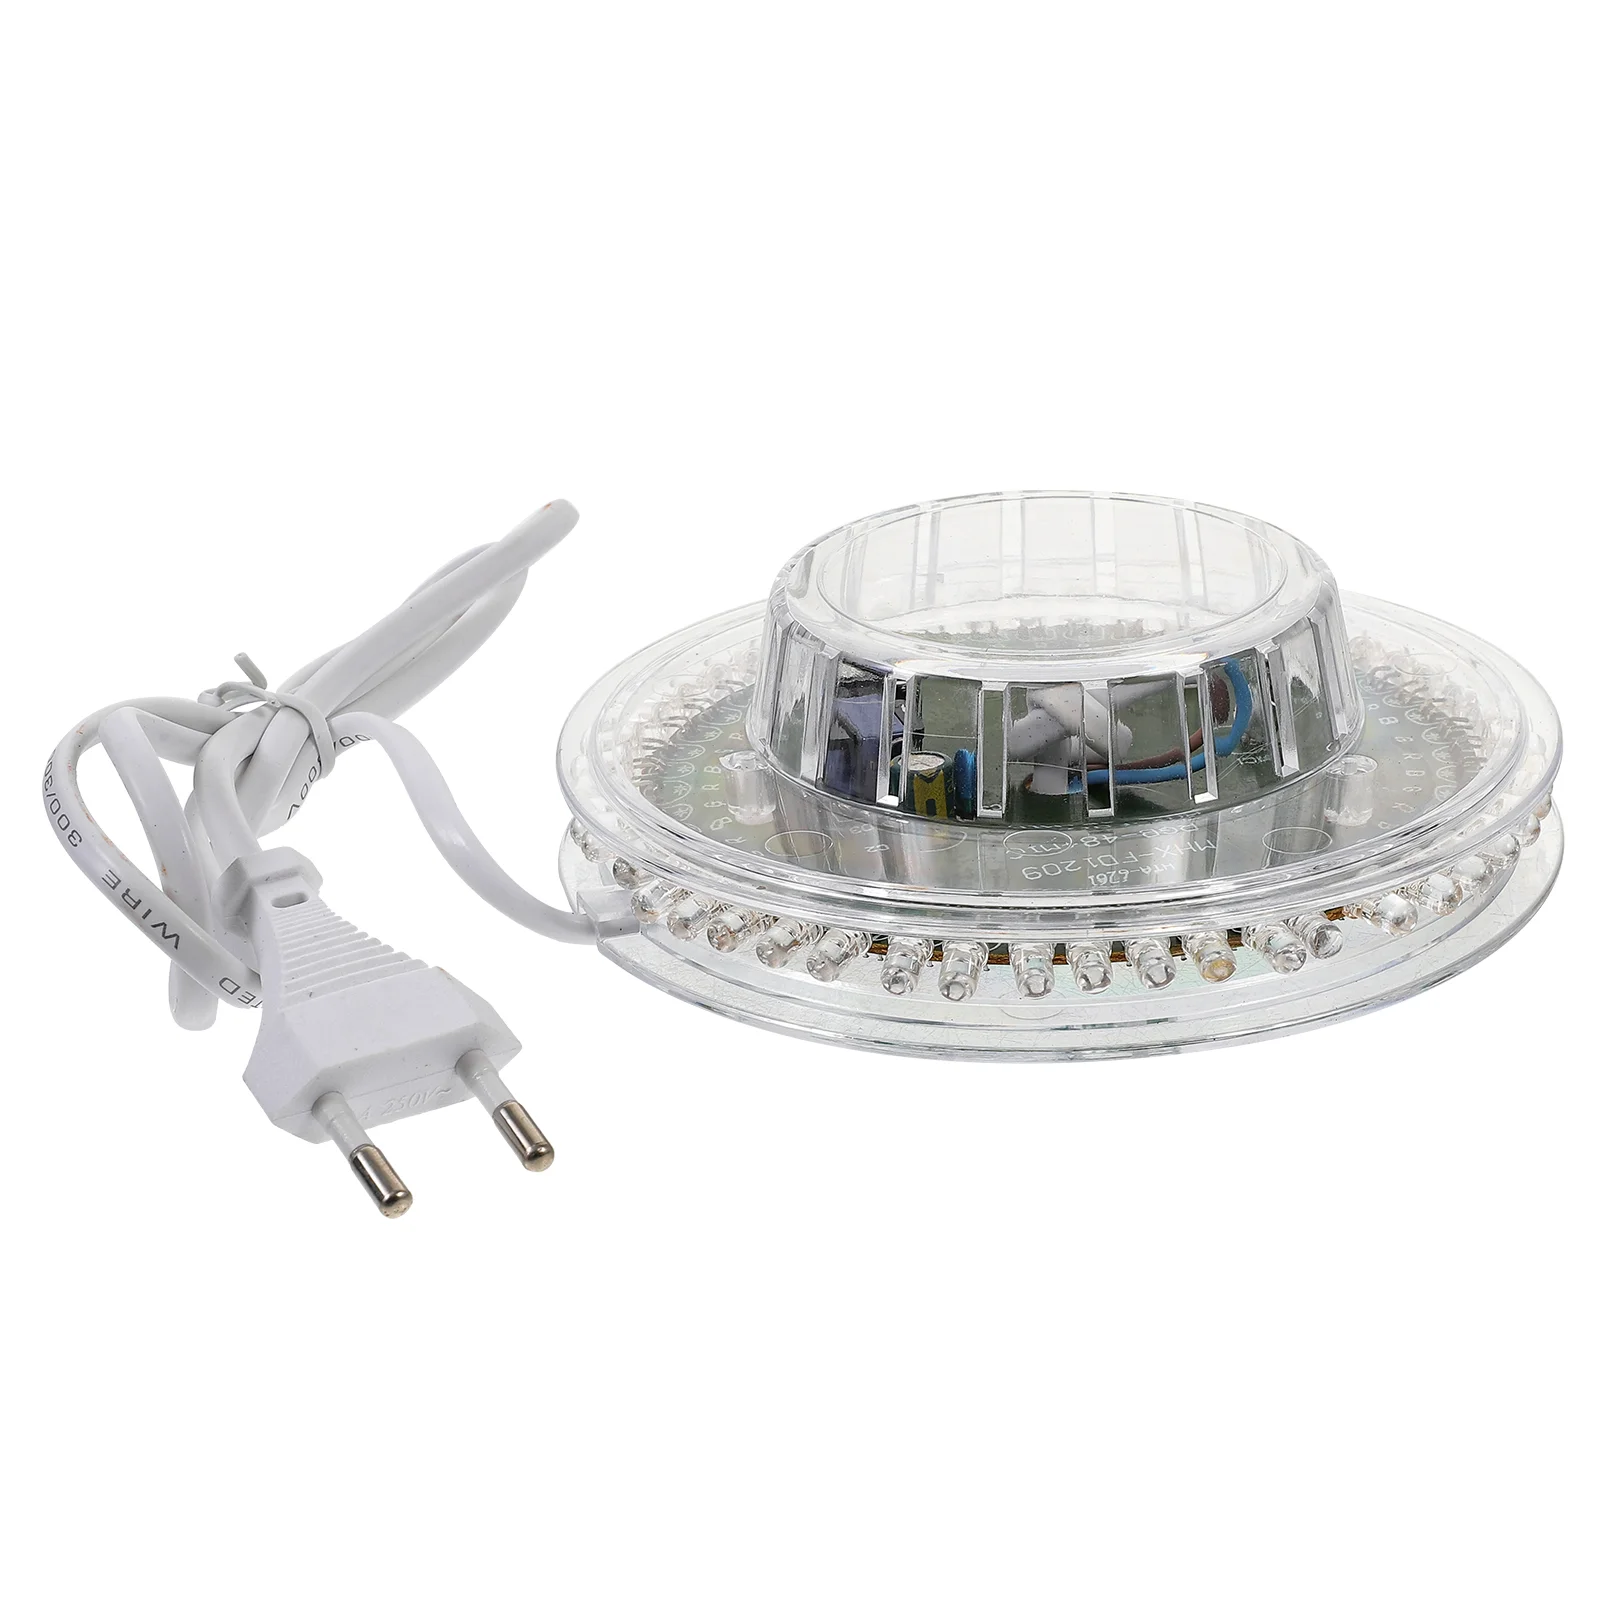 

Novelty Sunflower Shaped Voice-Activated /Auto Rotating 48-LED RGB Light LED Party Light (White, EU Plug)